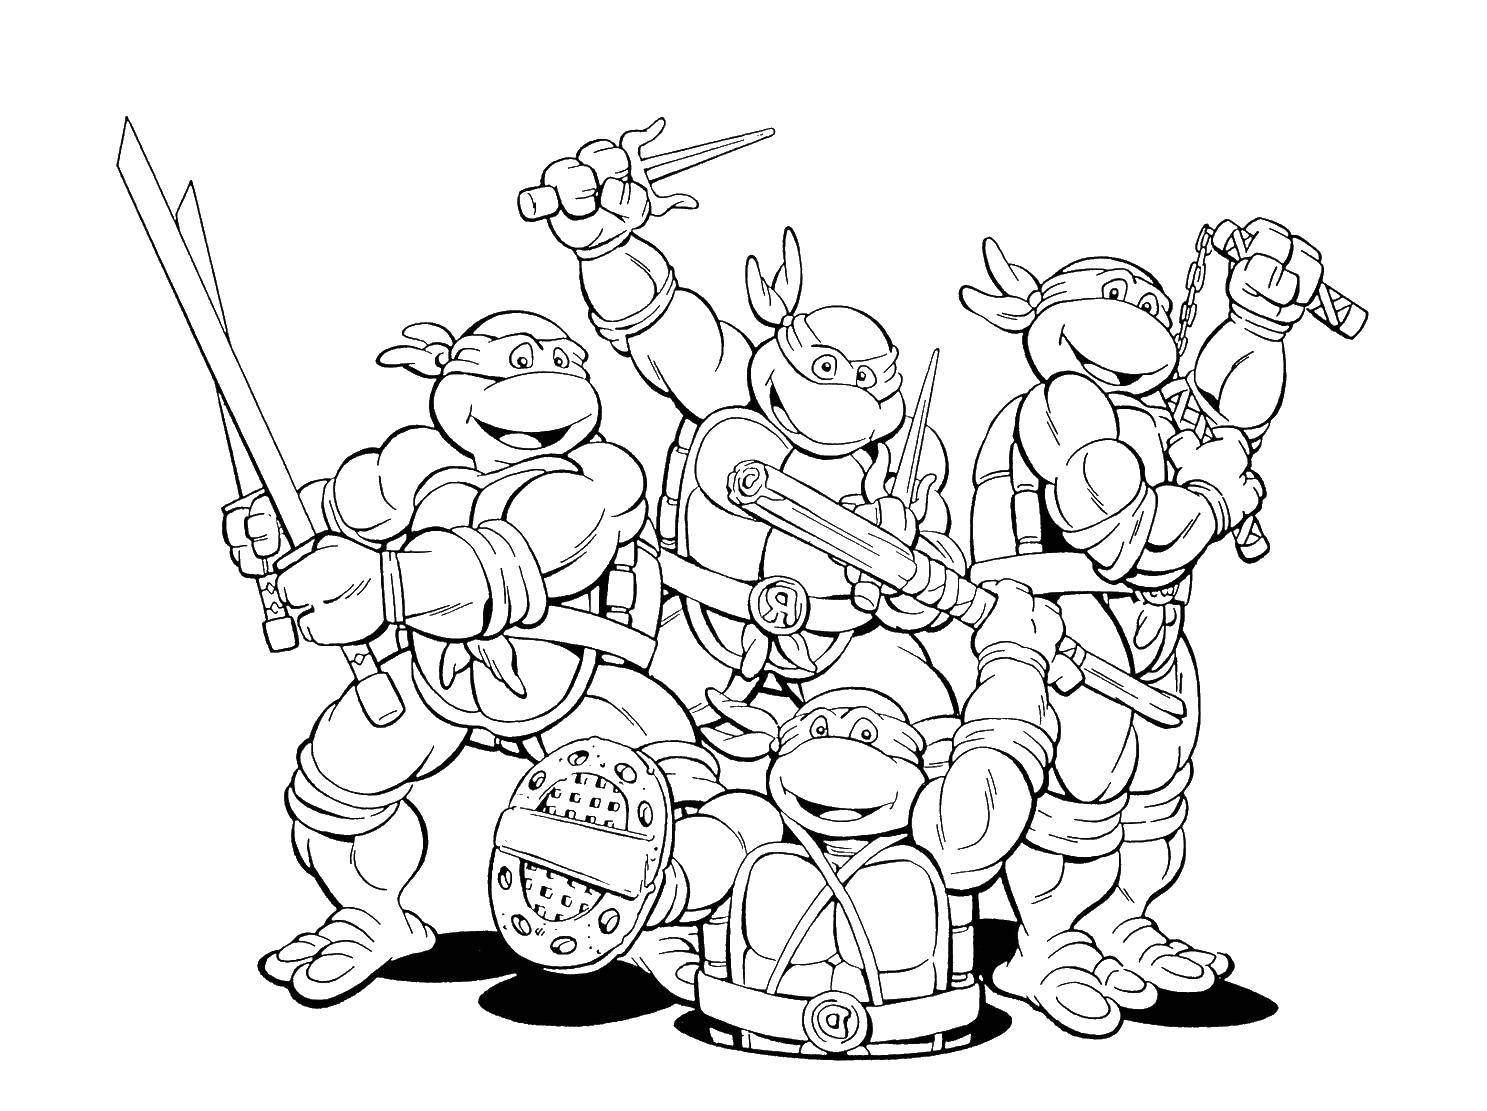 Coloring Teenage mutant ninja turtles. Category teenage mutant ninja turtles. Tags:  cartoons, ninja turtles, war.